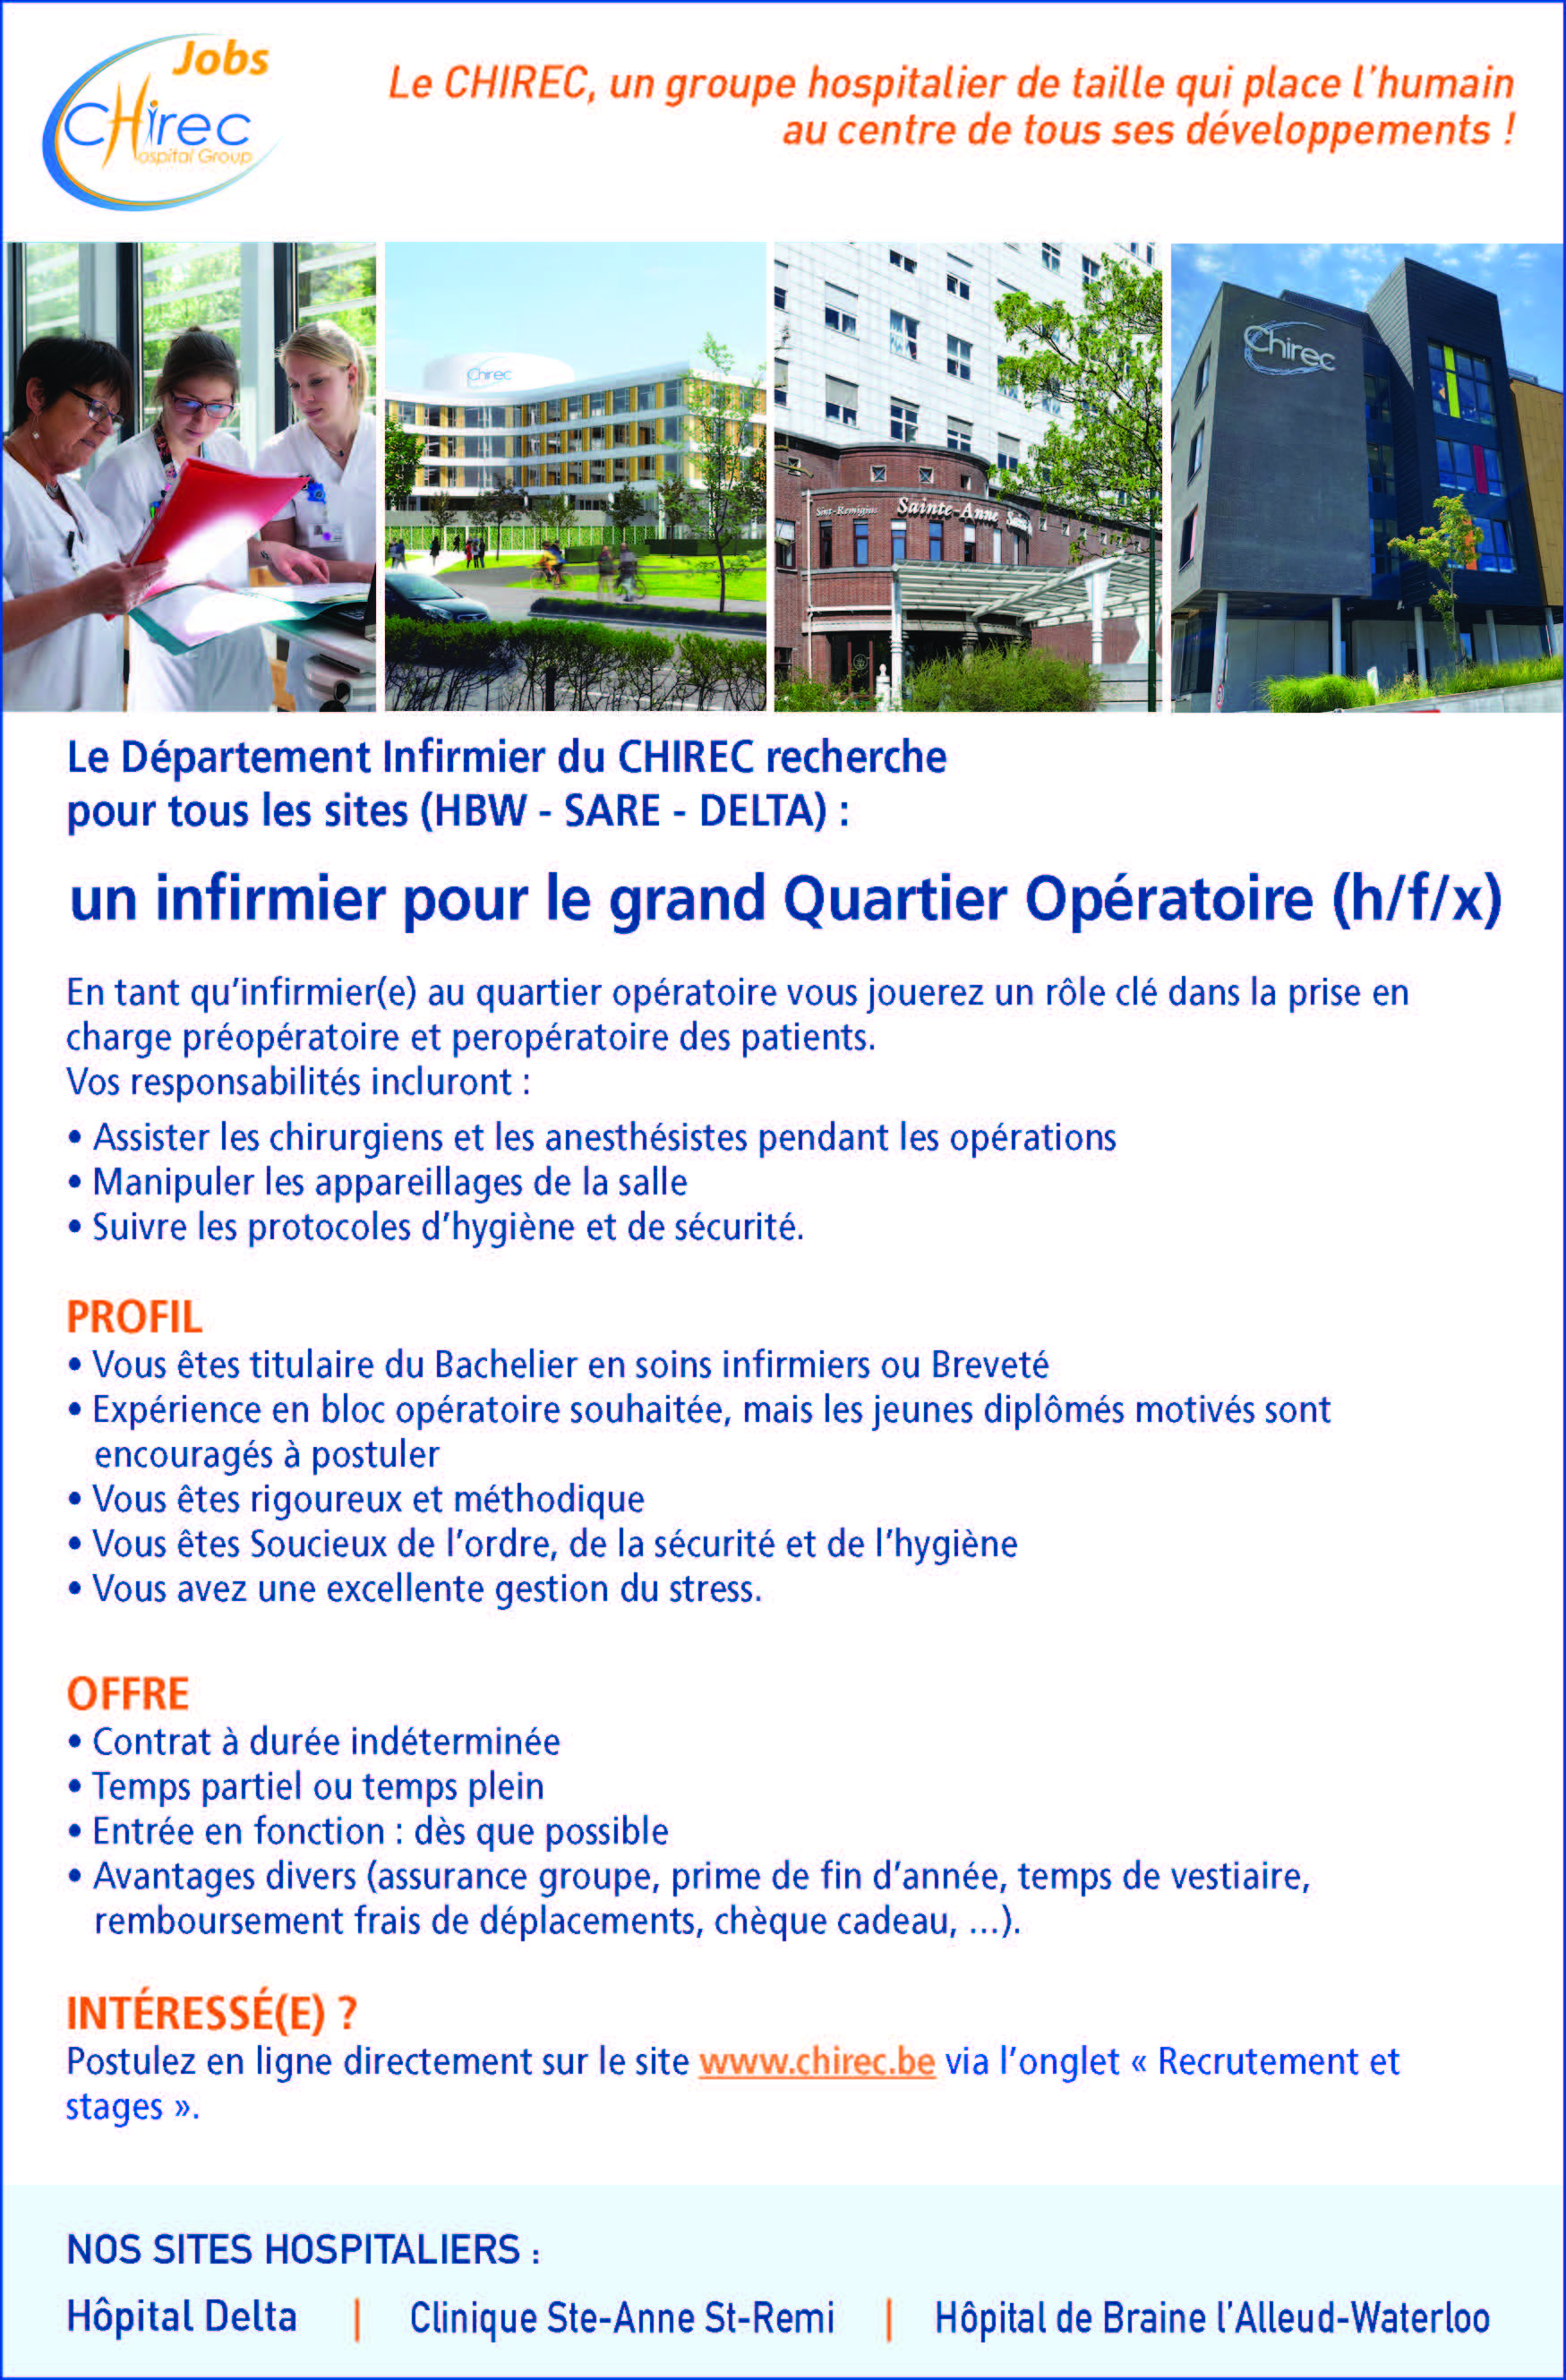 Le Département infirmier du CHIREC recherche pour tous les sites (HBW - SARE - DELTA) un infirmier pour le grand quartier opératoire (h/f/x)